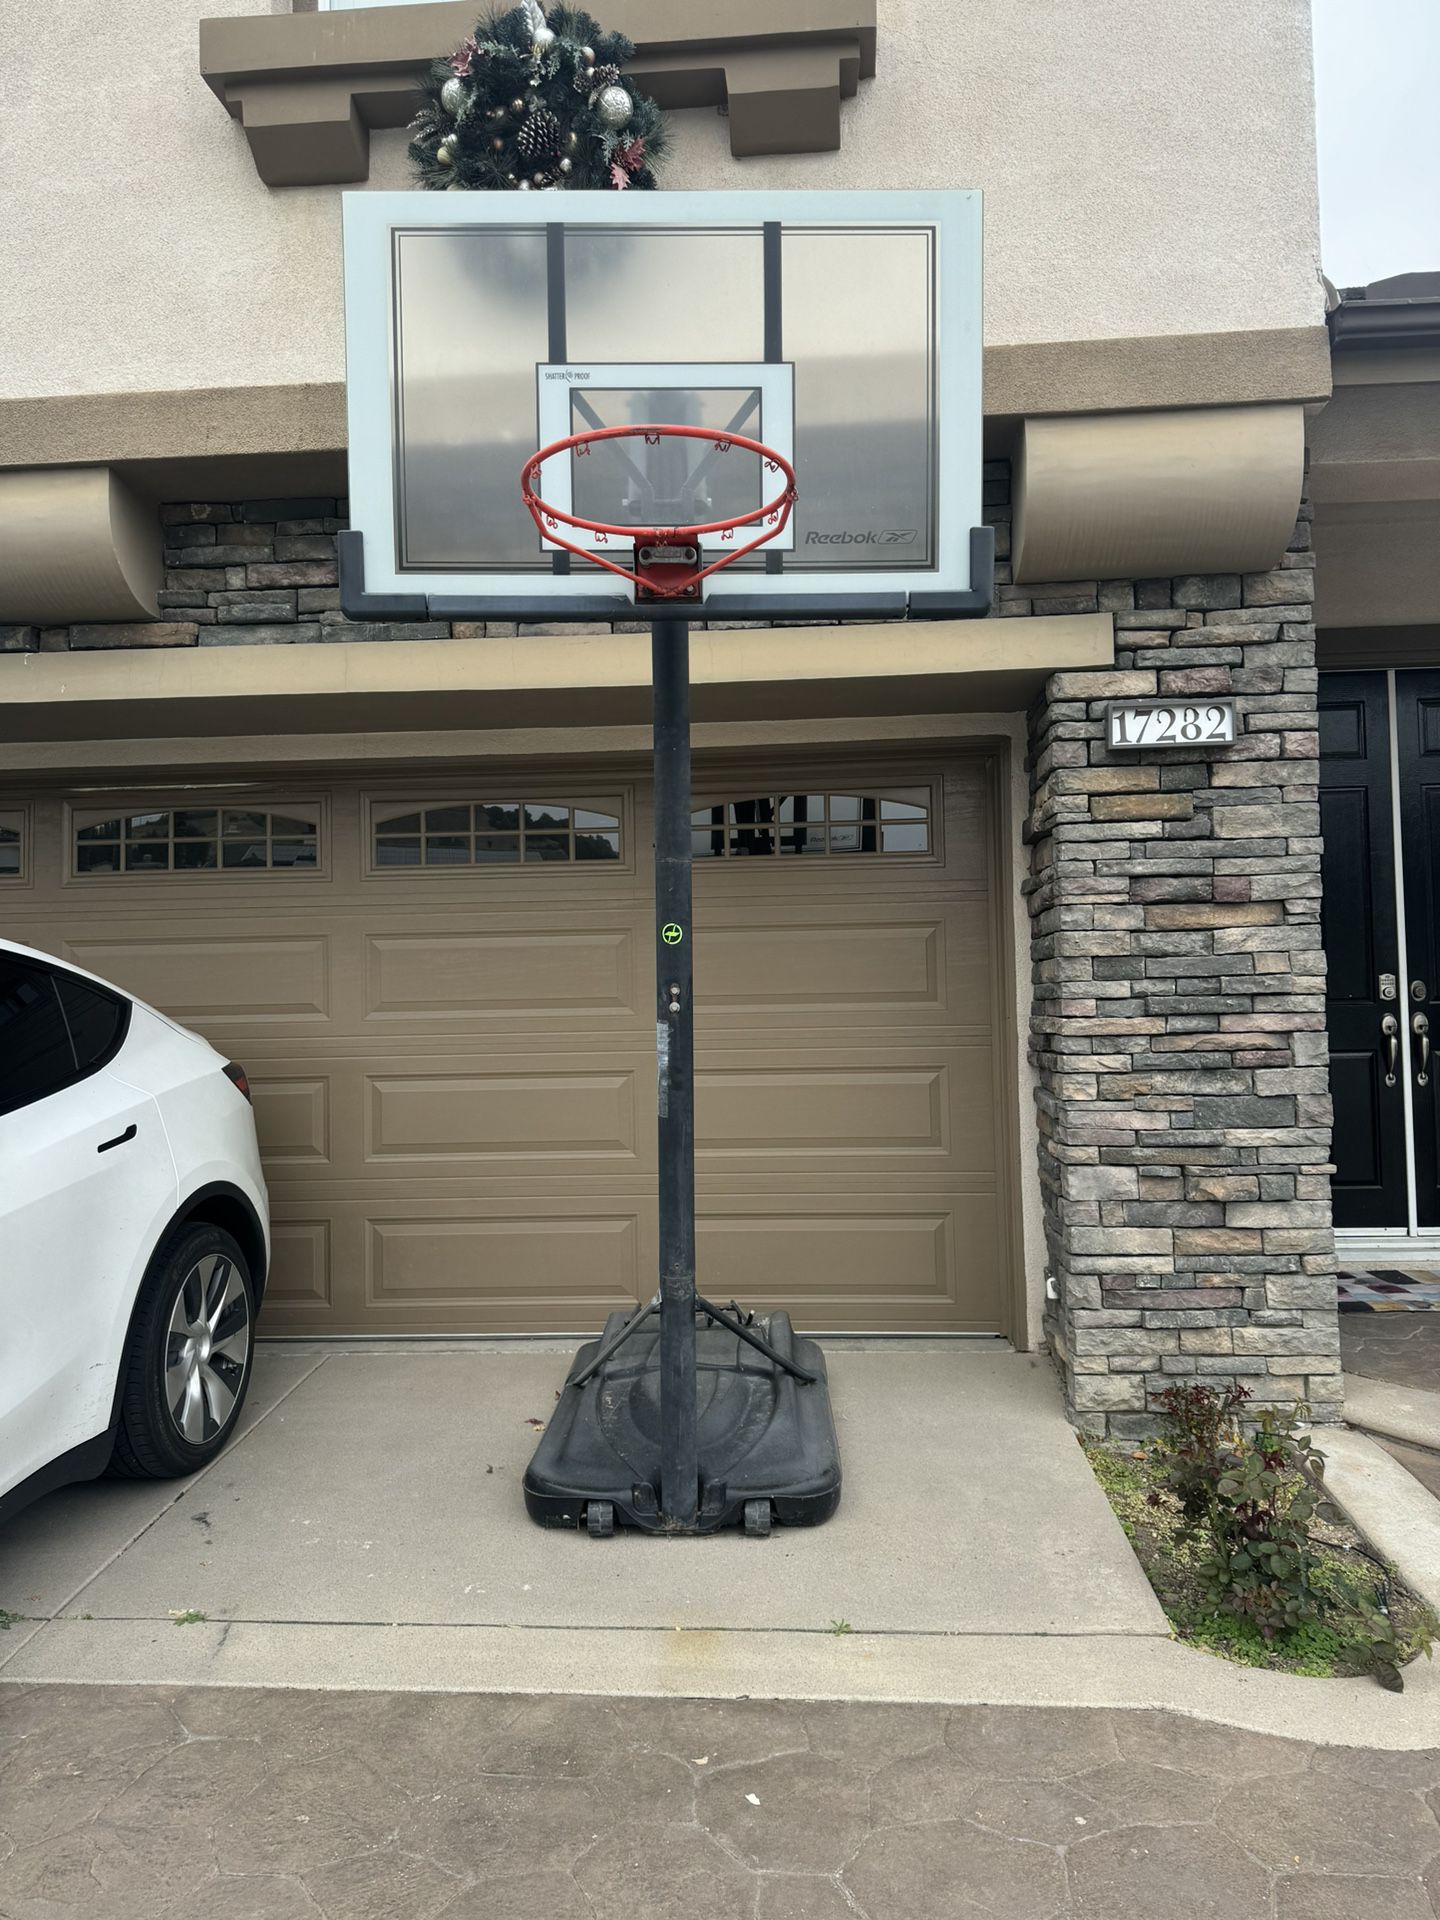 Liftable basketball stand